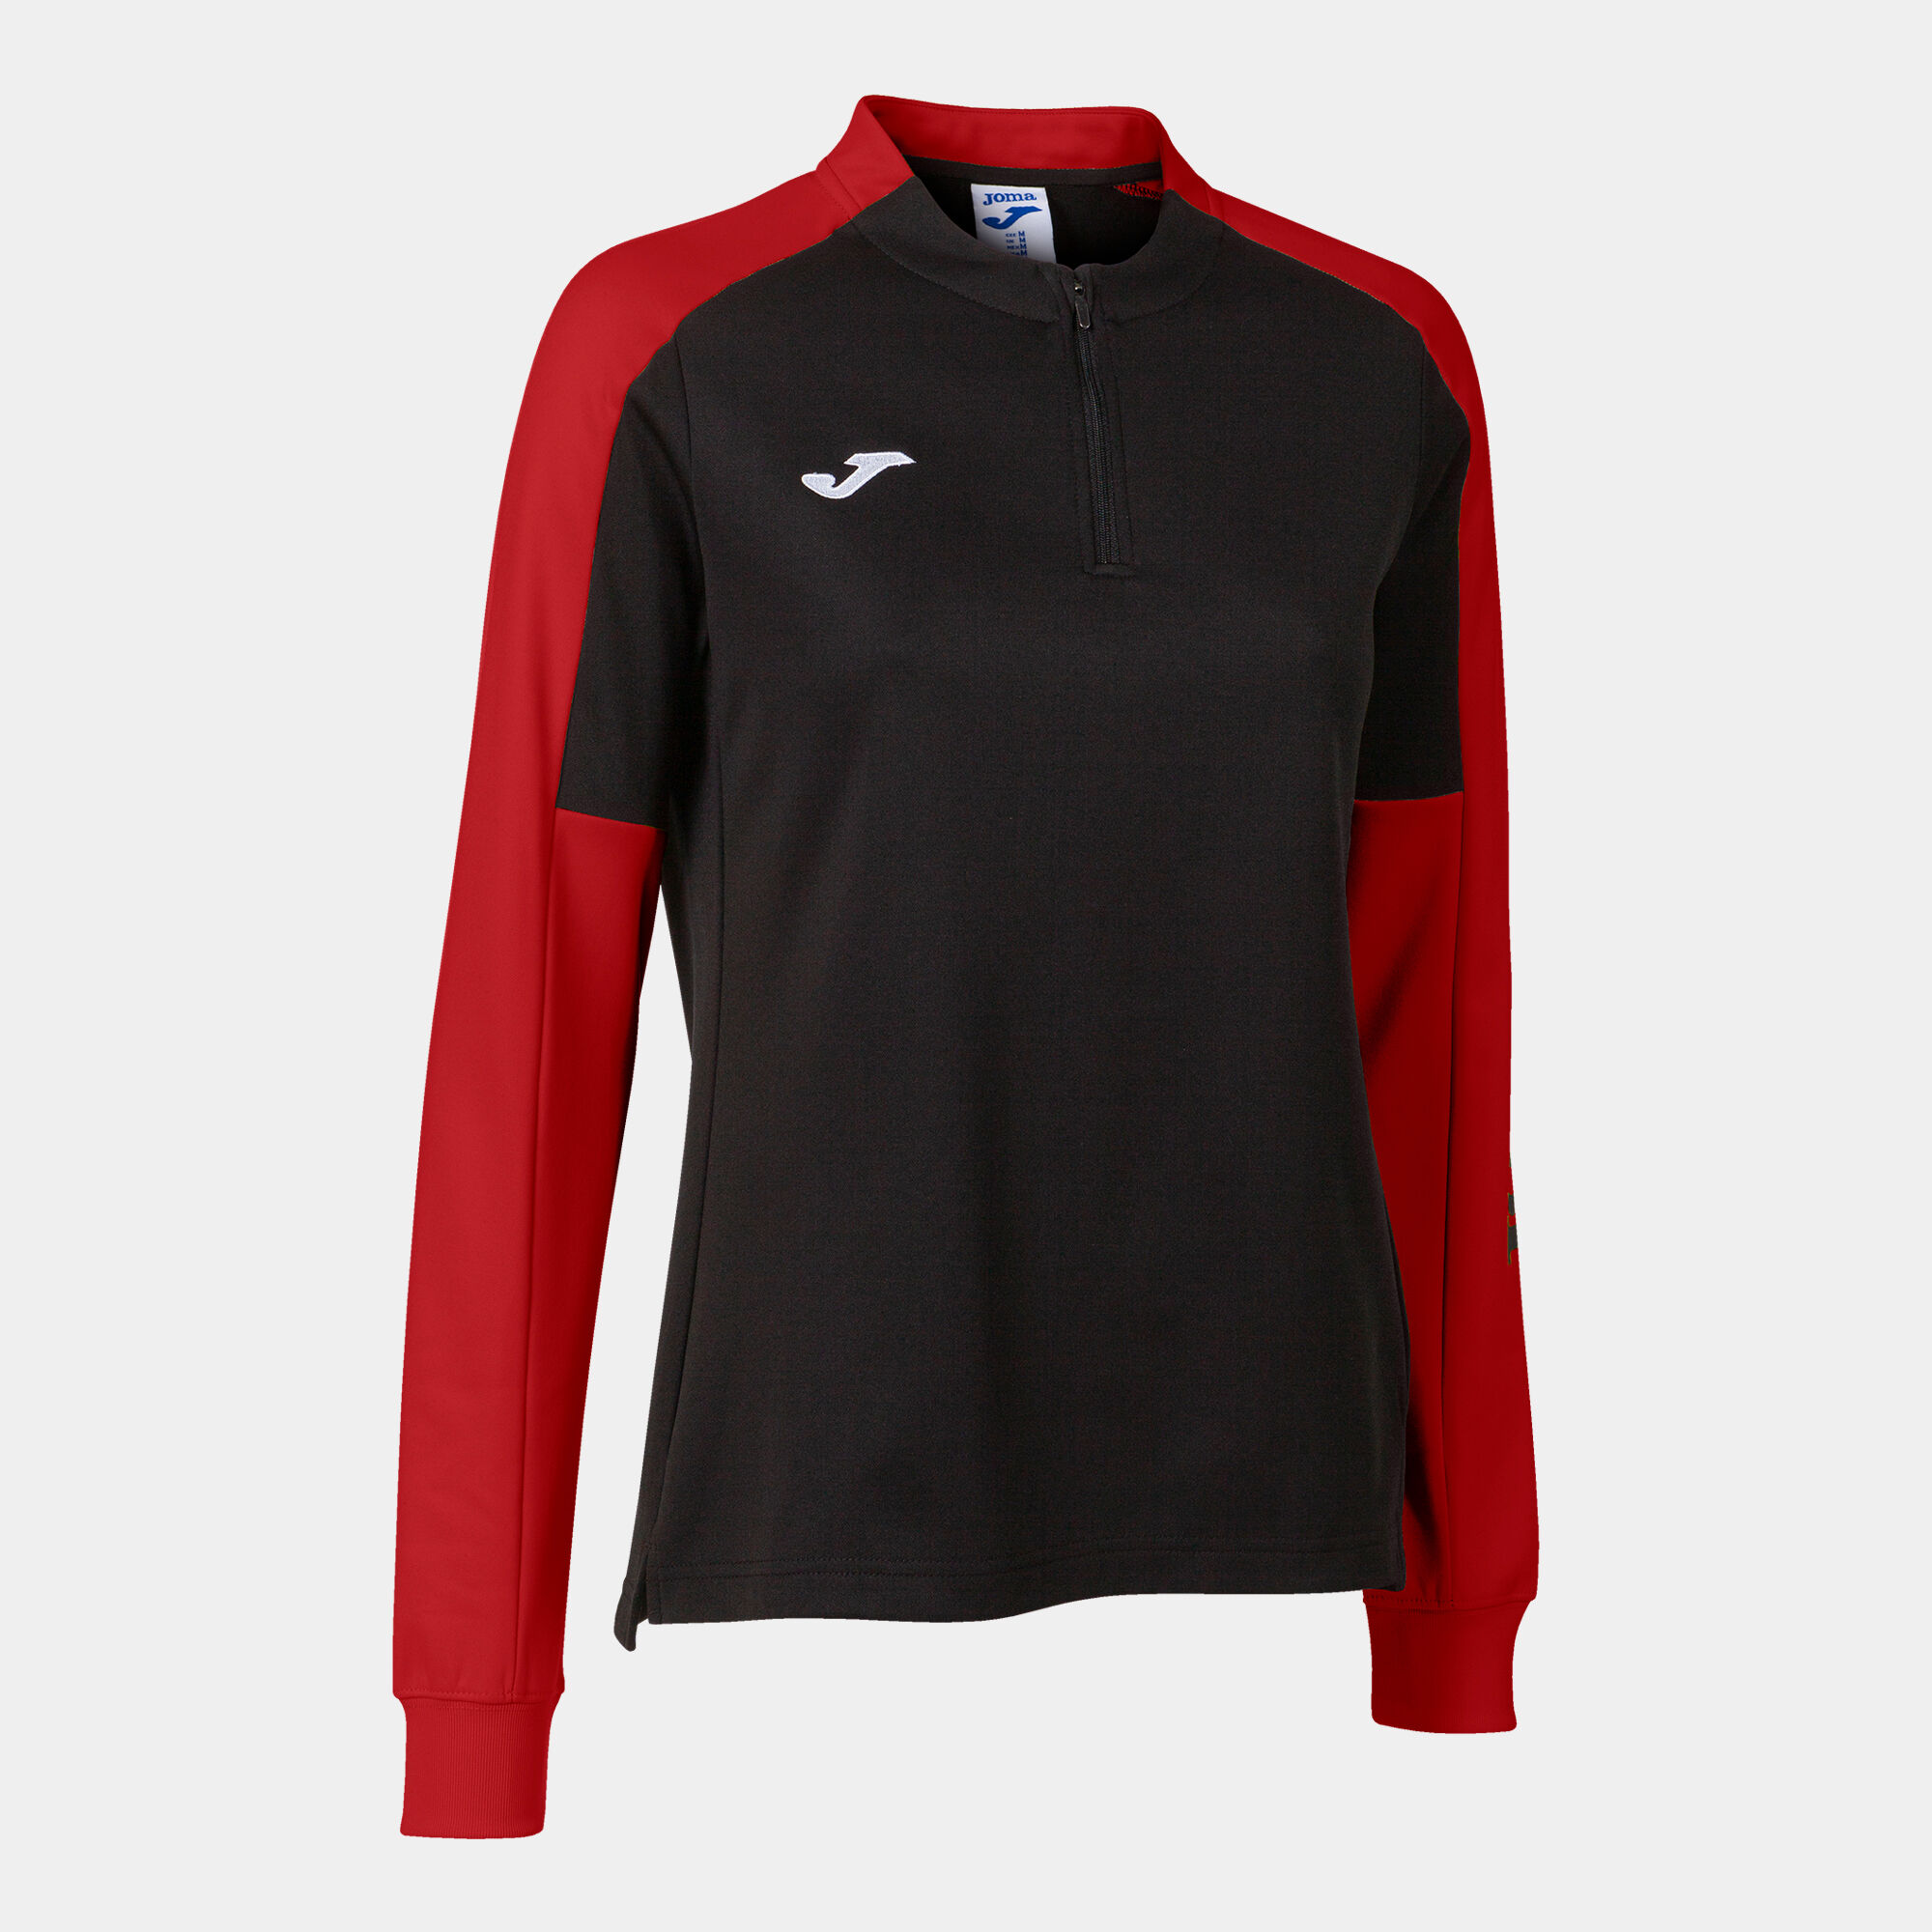 Sweat-shirt femme Eco Championship noir rouge